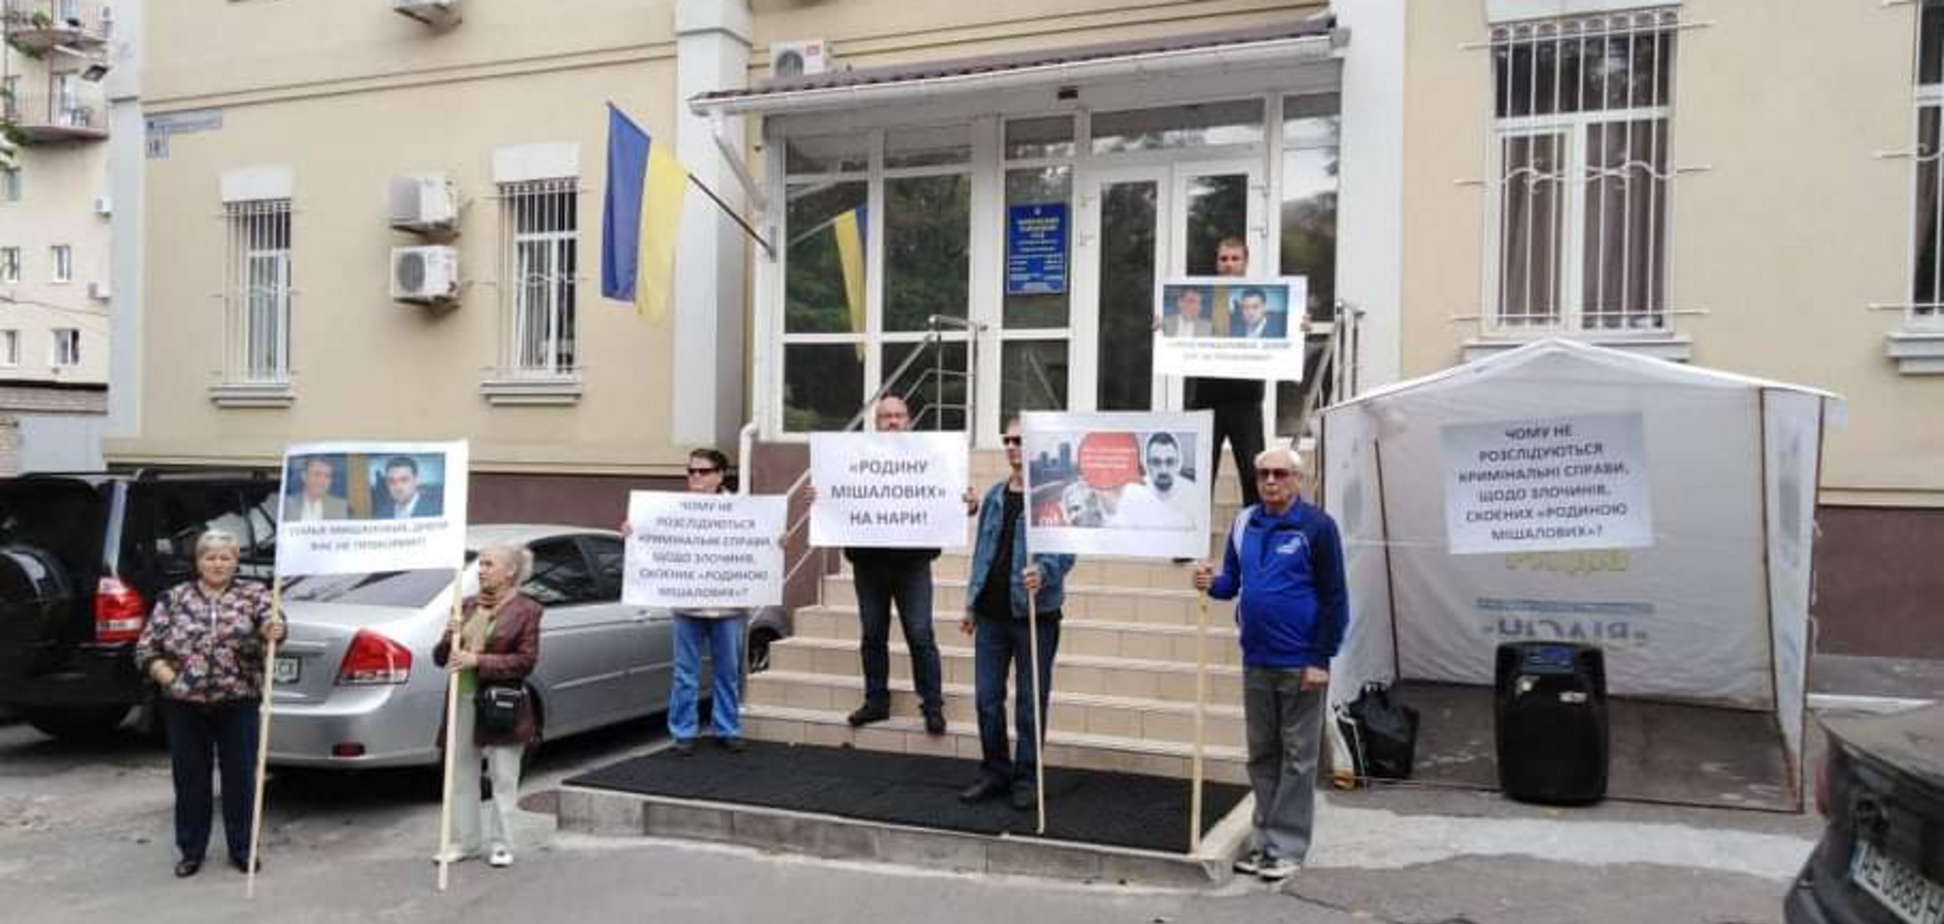 У Дніпрі пікетують суд, щоб зупинити корупцію сім'ї Мішалова. Фото, відео